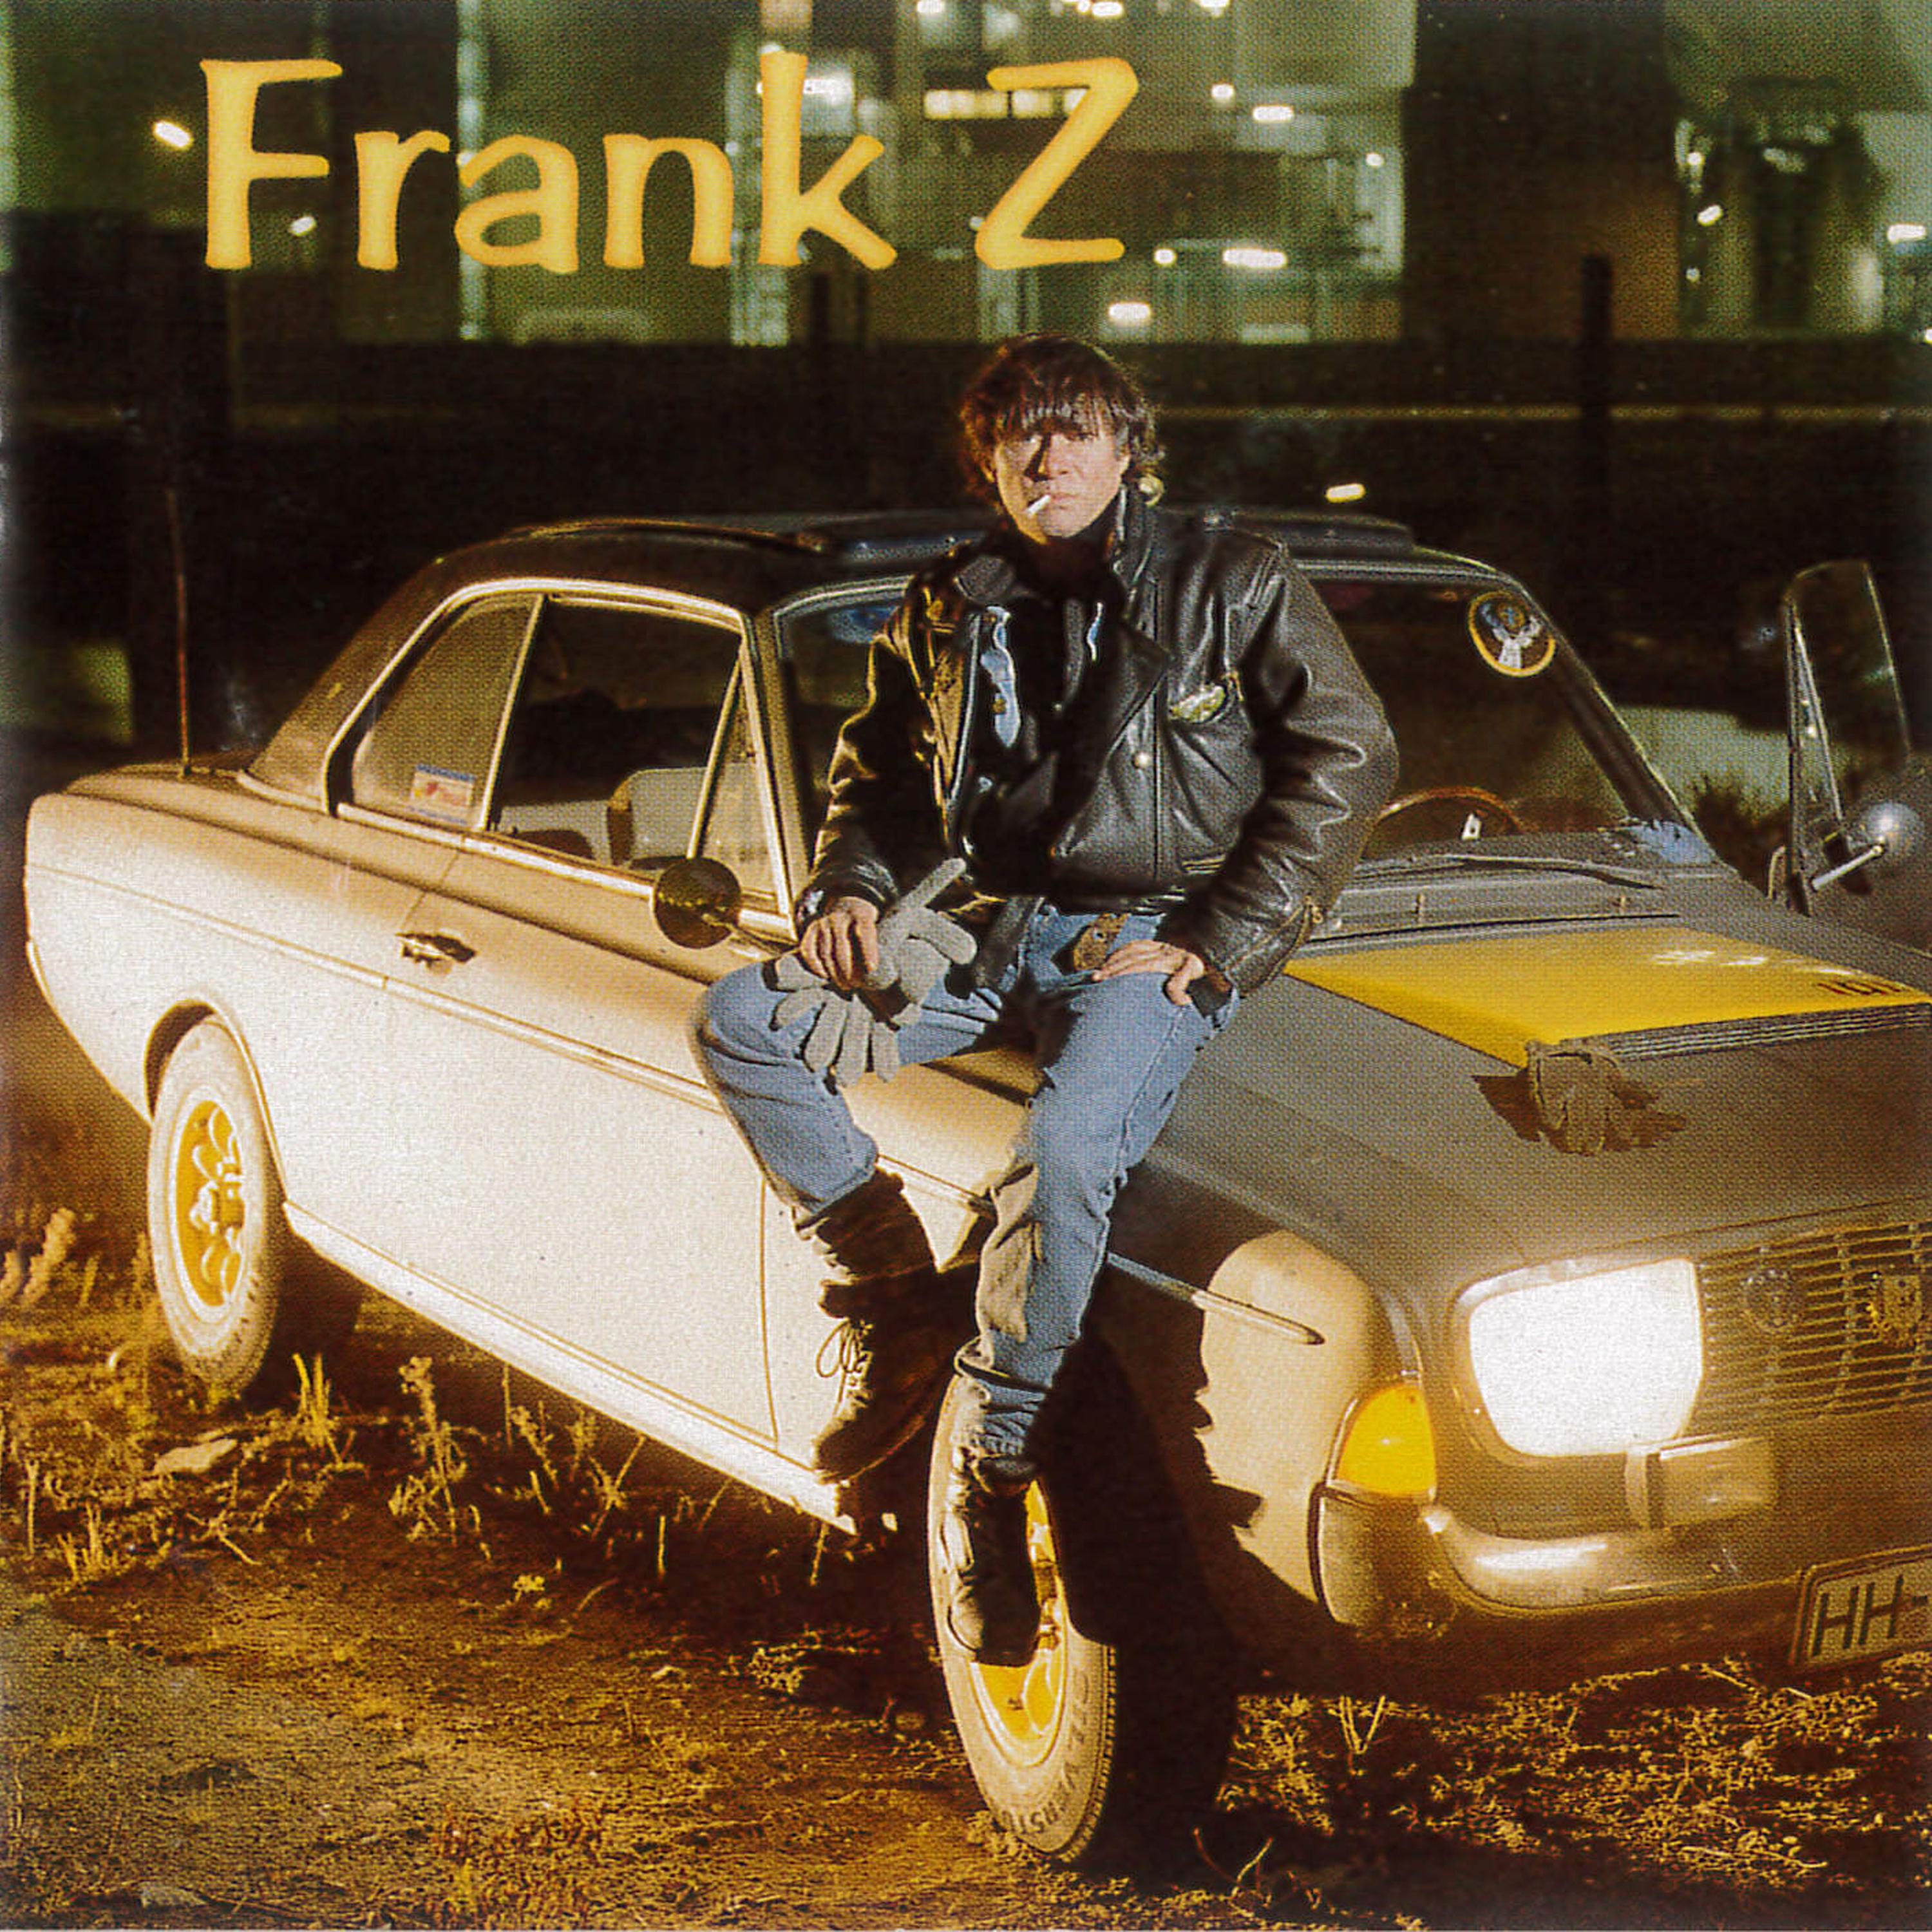 Frank Z - Eine Nase auf Charly